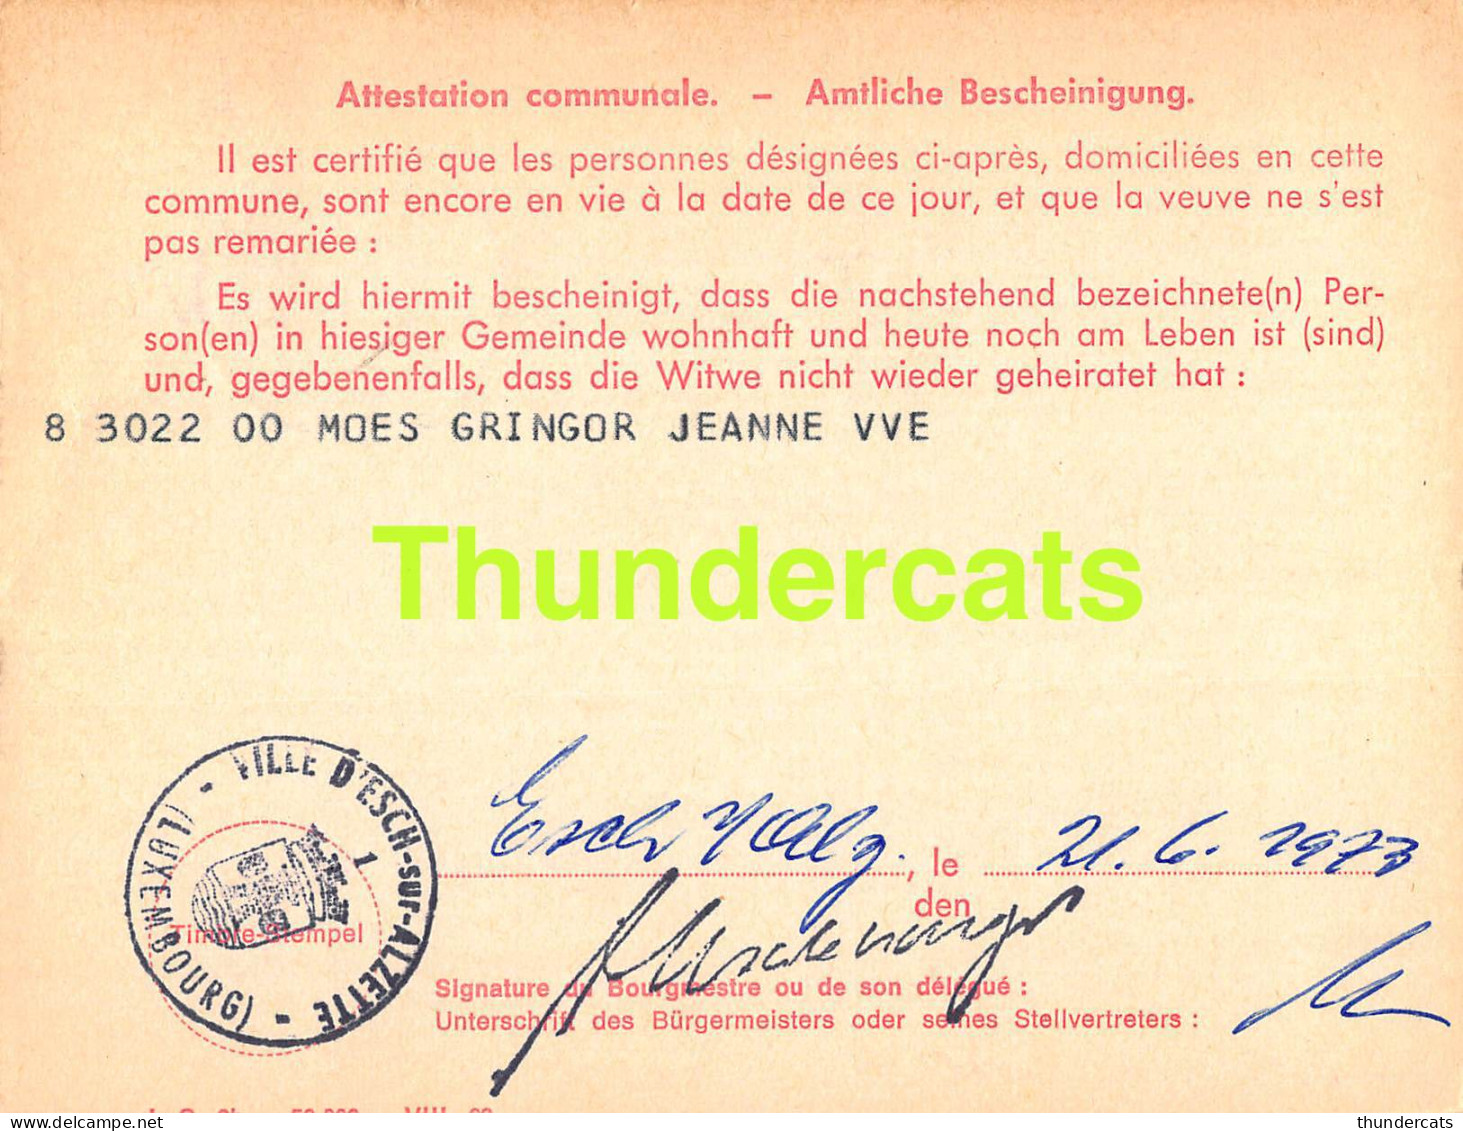 ASSURANCE VIEILLESSE INVALIDITE LUXEMBOURG 1973 MOES GRINGOR VILLE D'ESCH ALZETTE  - Briefe U. Dokumente